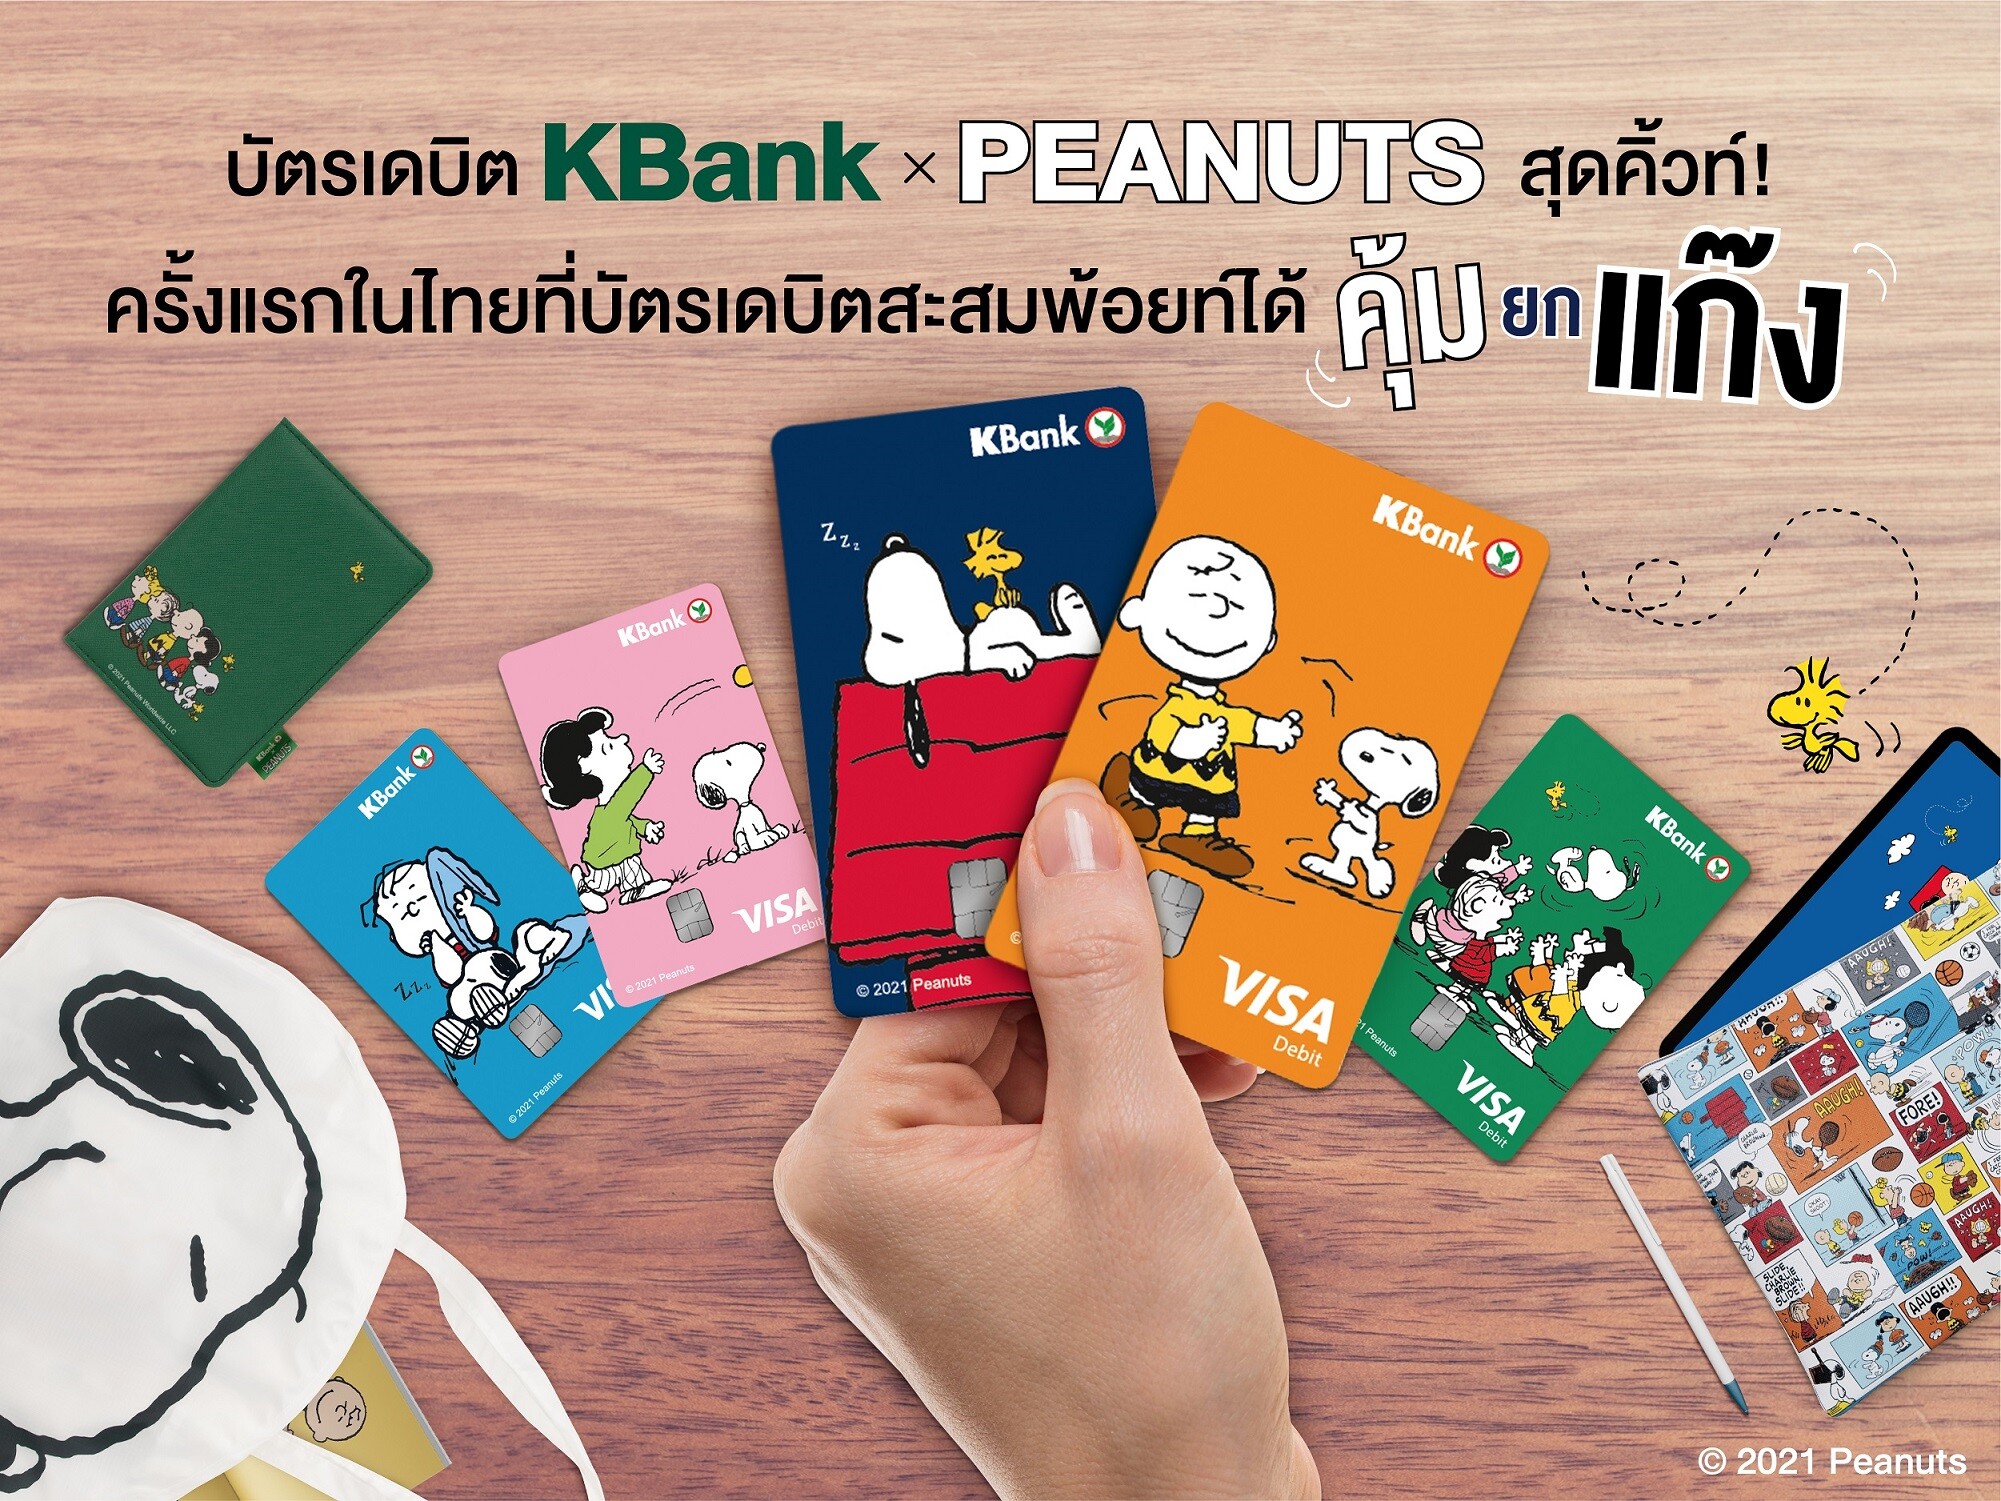 บัตรเดบิต KBank x PEANUTS สุดคิ้วท์ ครั้งแรกในไทยที่บัตรเดบิตสะสมพ้อยท์ได้คุ้มยกแก๊ง